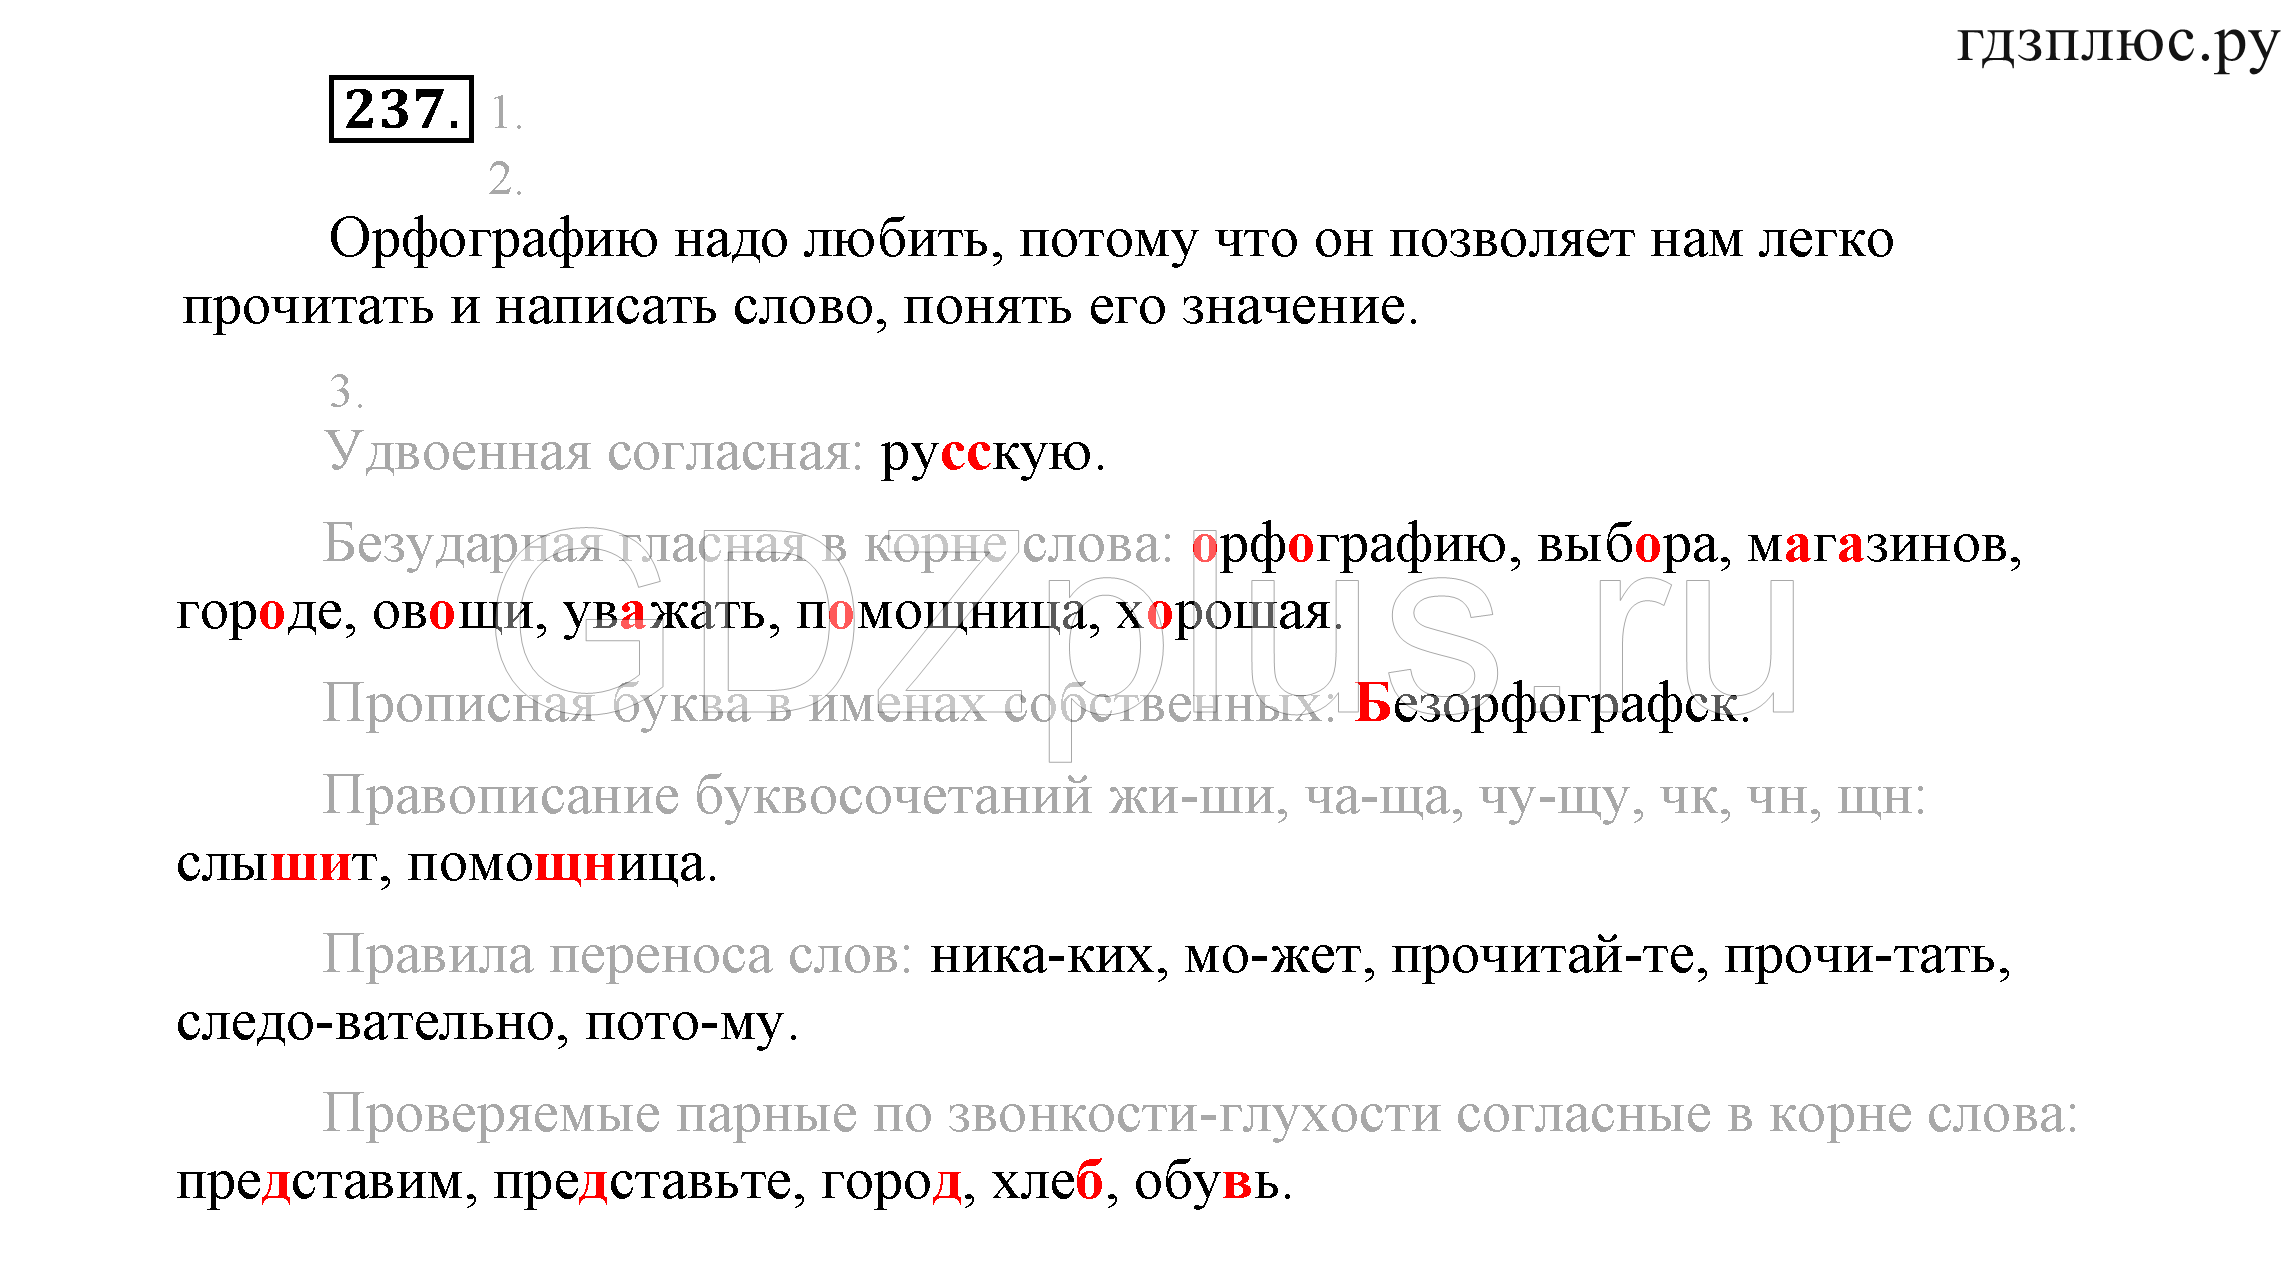 правила по русскому языку раст рост в корне слова фото 17